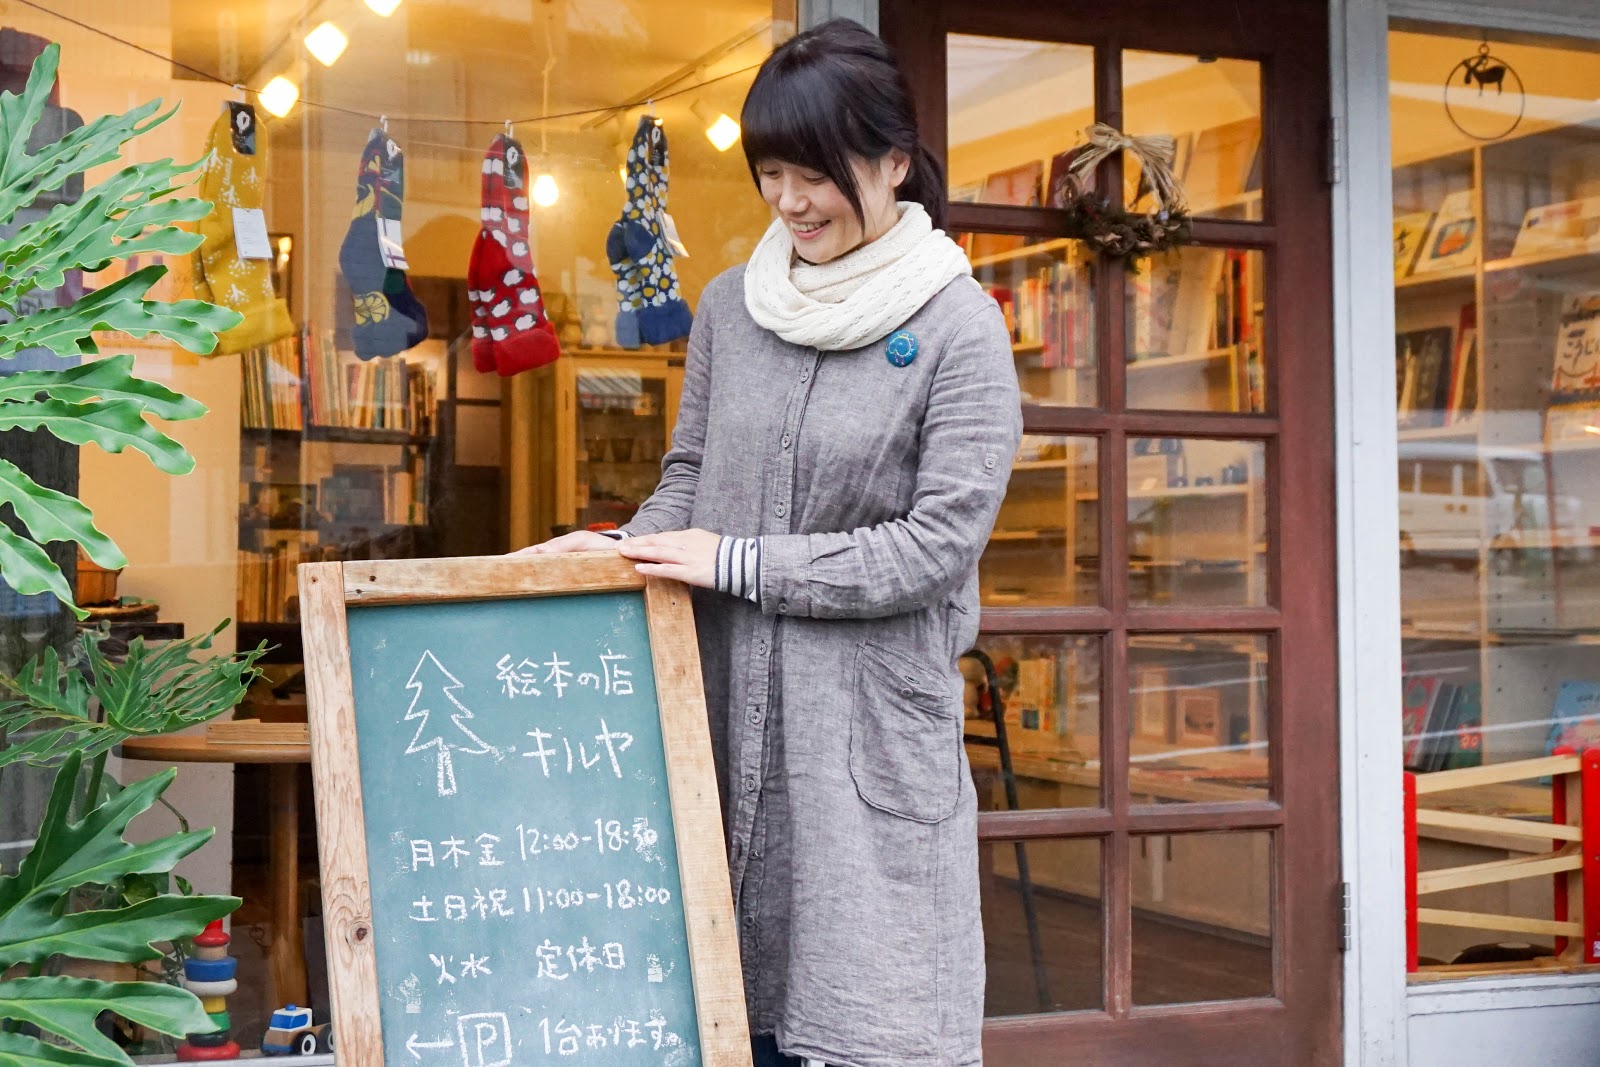 【まちなかストーリー】絵本の店「キルヤ」 星野紀子さん 第１回「浜松で絵本の店をはじめたきっかけ」